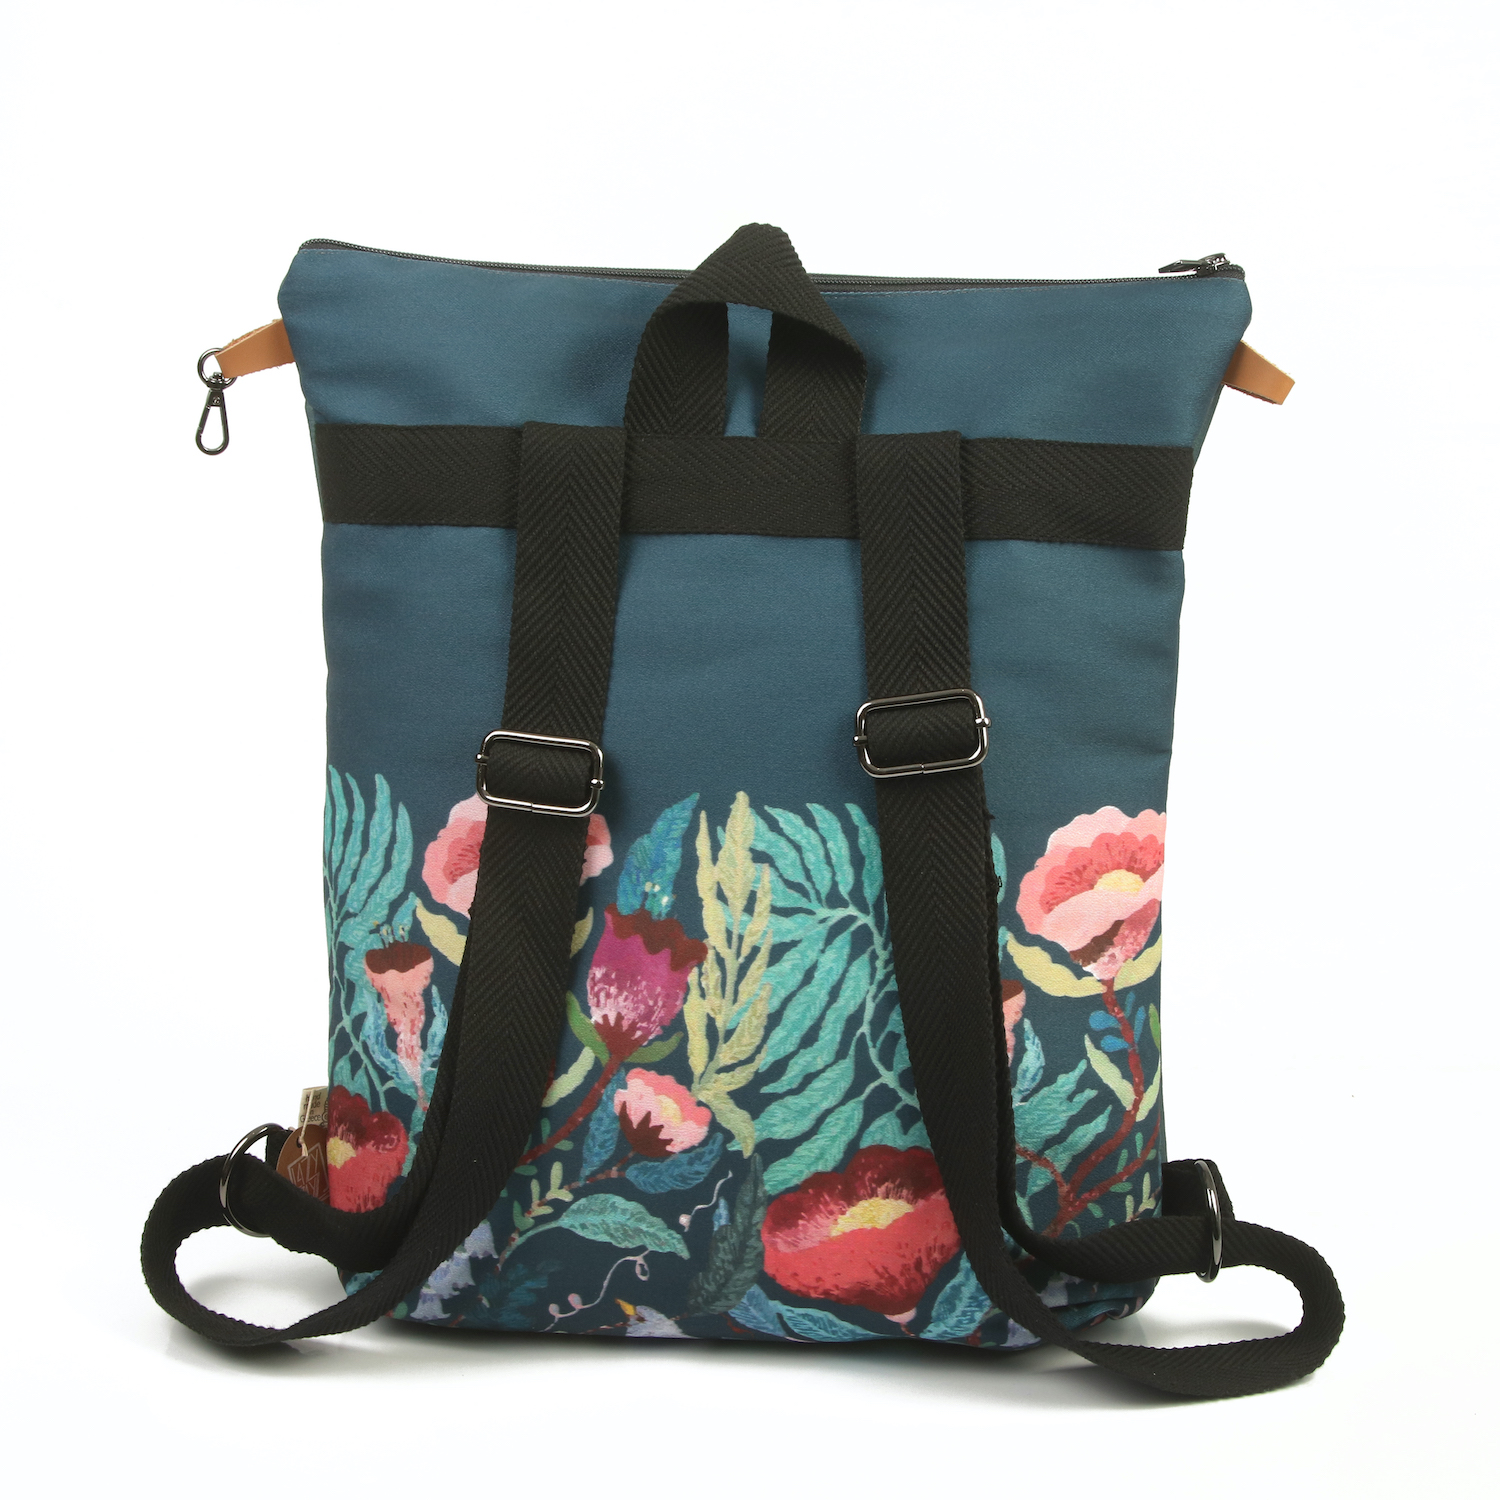 LazyDayz Designs Backpack γυναικείος σάκος πλάτης χειροποίητος bb0508c